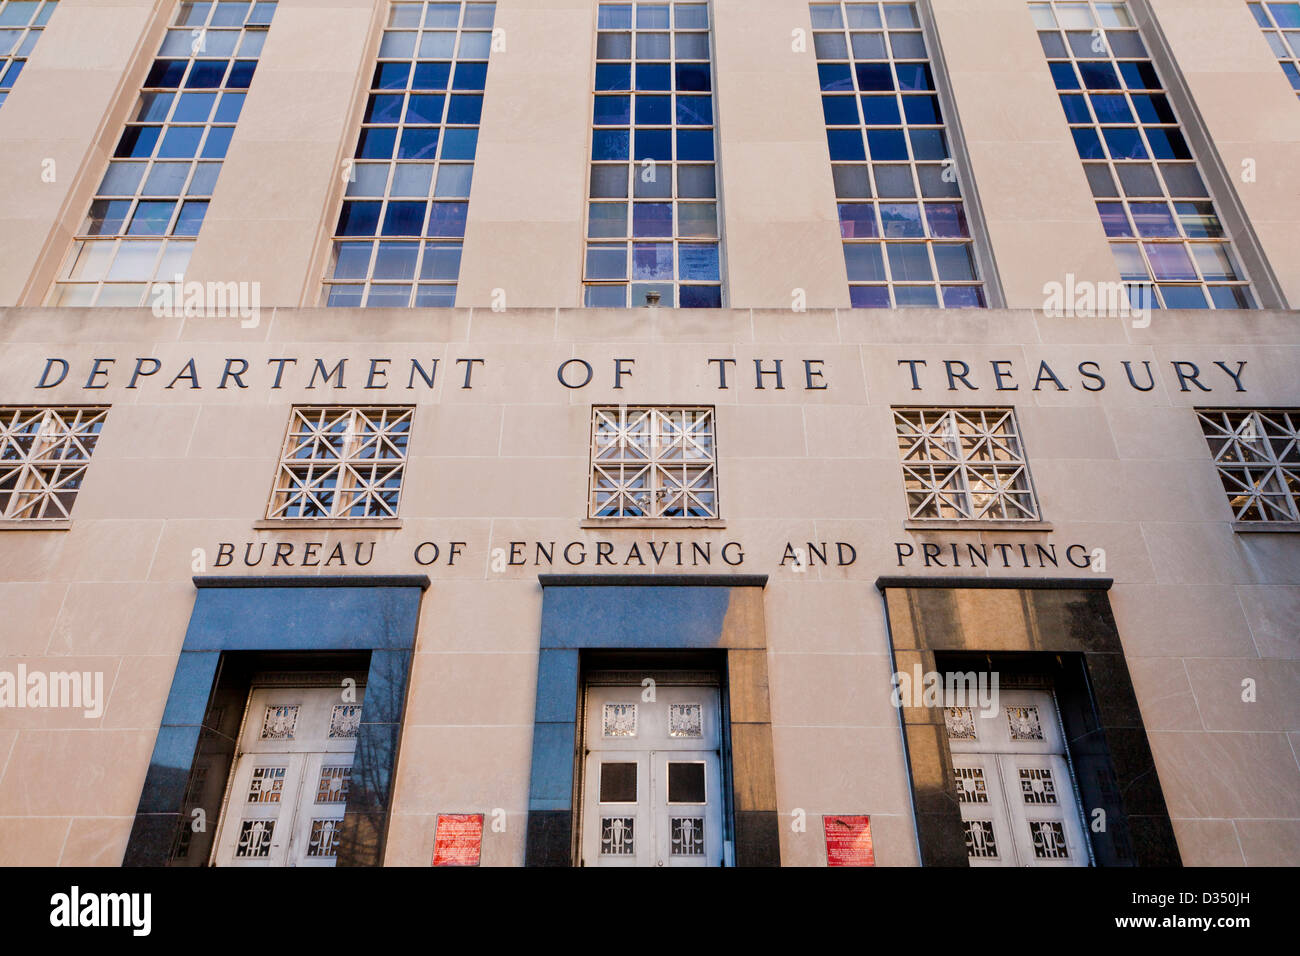 Bureau of Engraving and Printing - Ministère de la Treasury Building, Washington, DC Banque D'Images